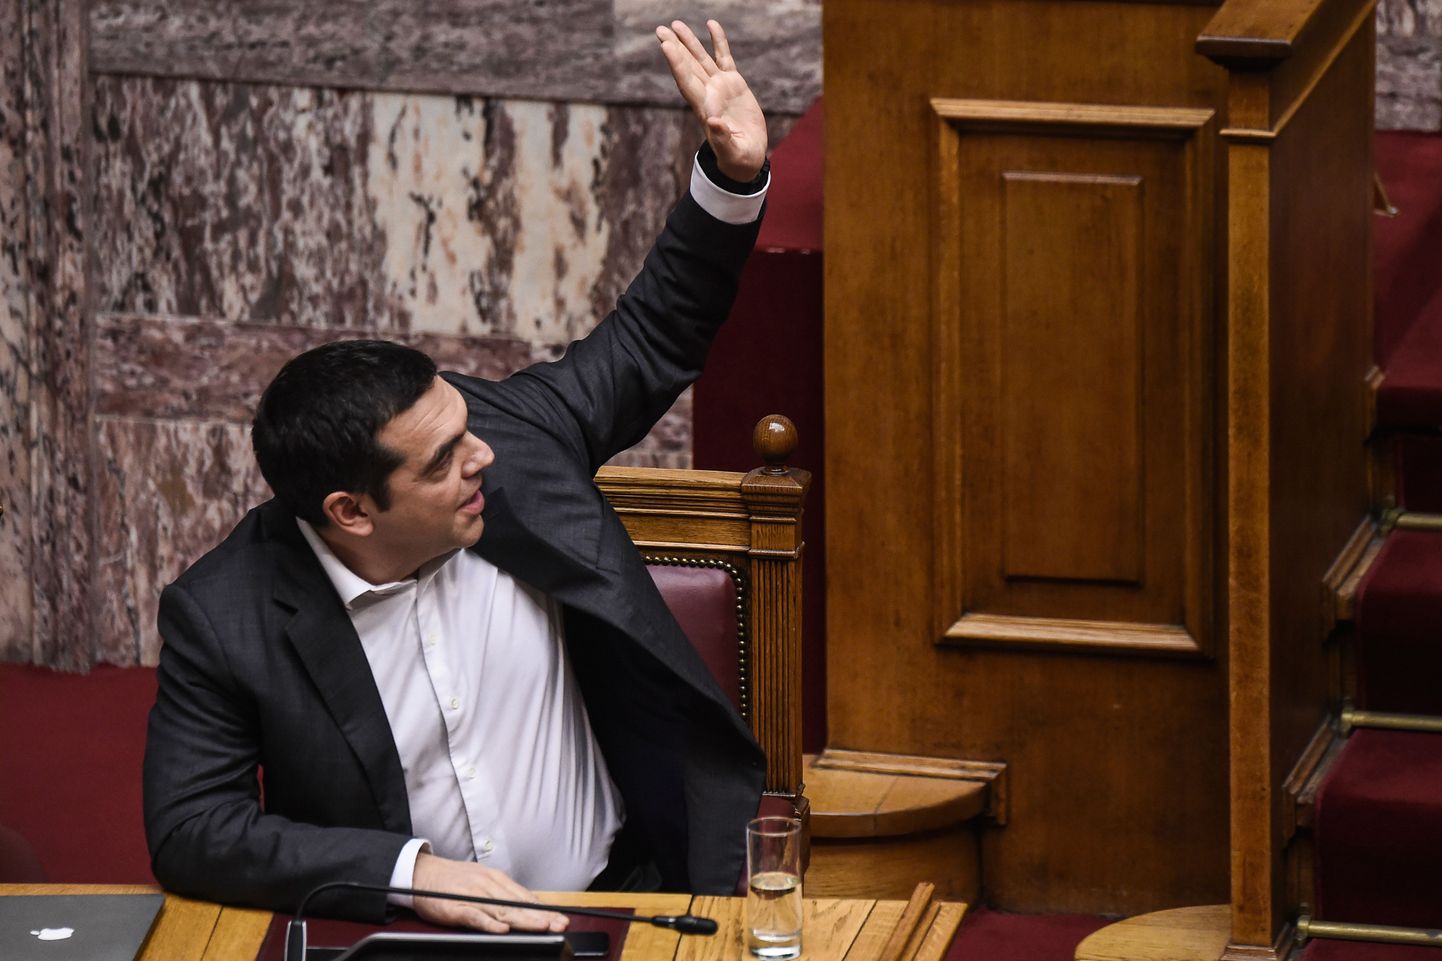 Kreeka peaminister Alexis Tsipras hääletamas.